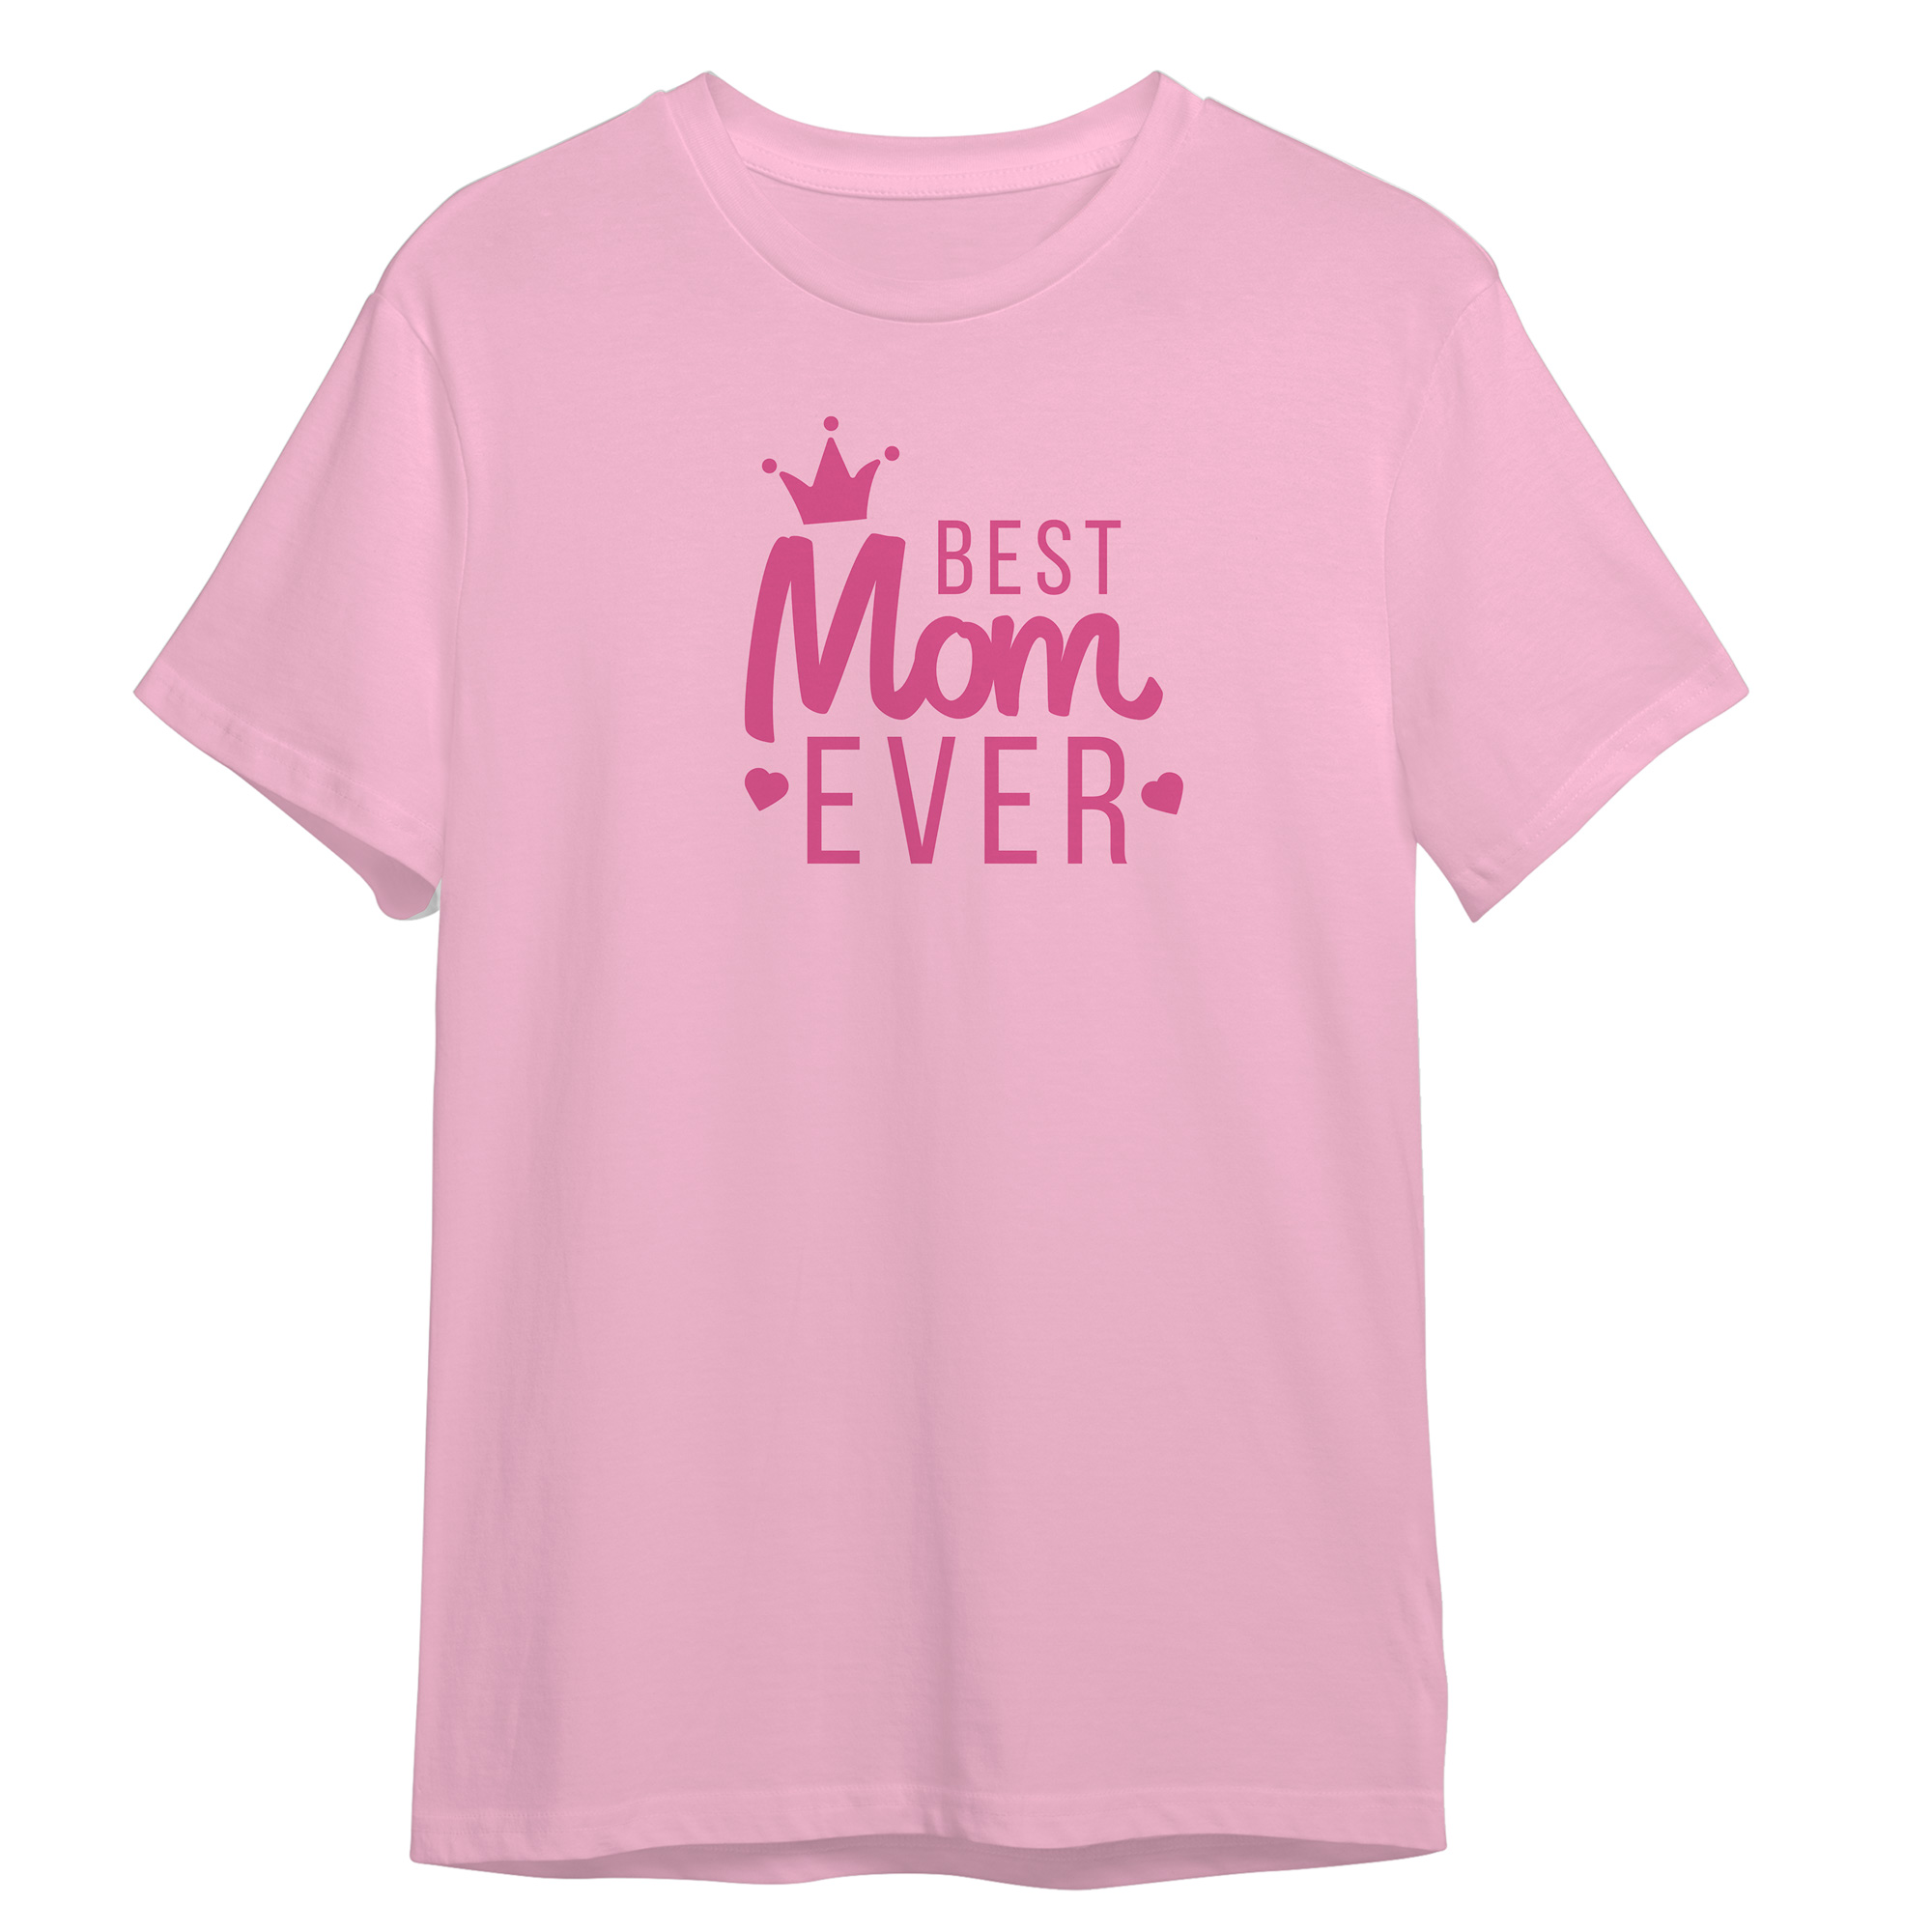 تی شرت آستین کوتاه زنانه مدل روز مادر نوشته بهترین مادر کد 0380 رنگ صورتی